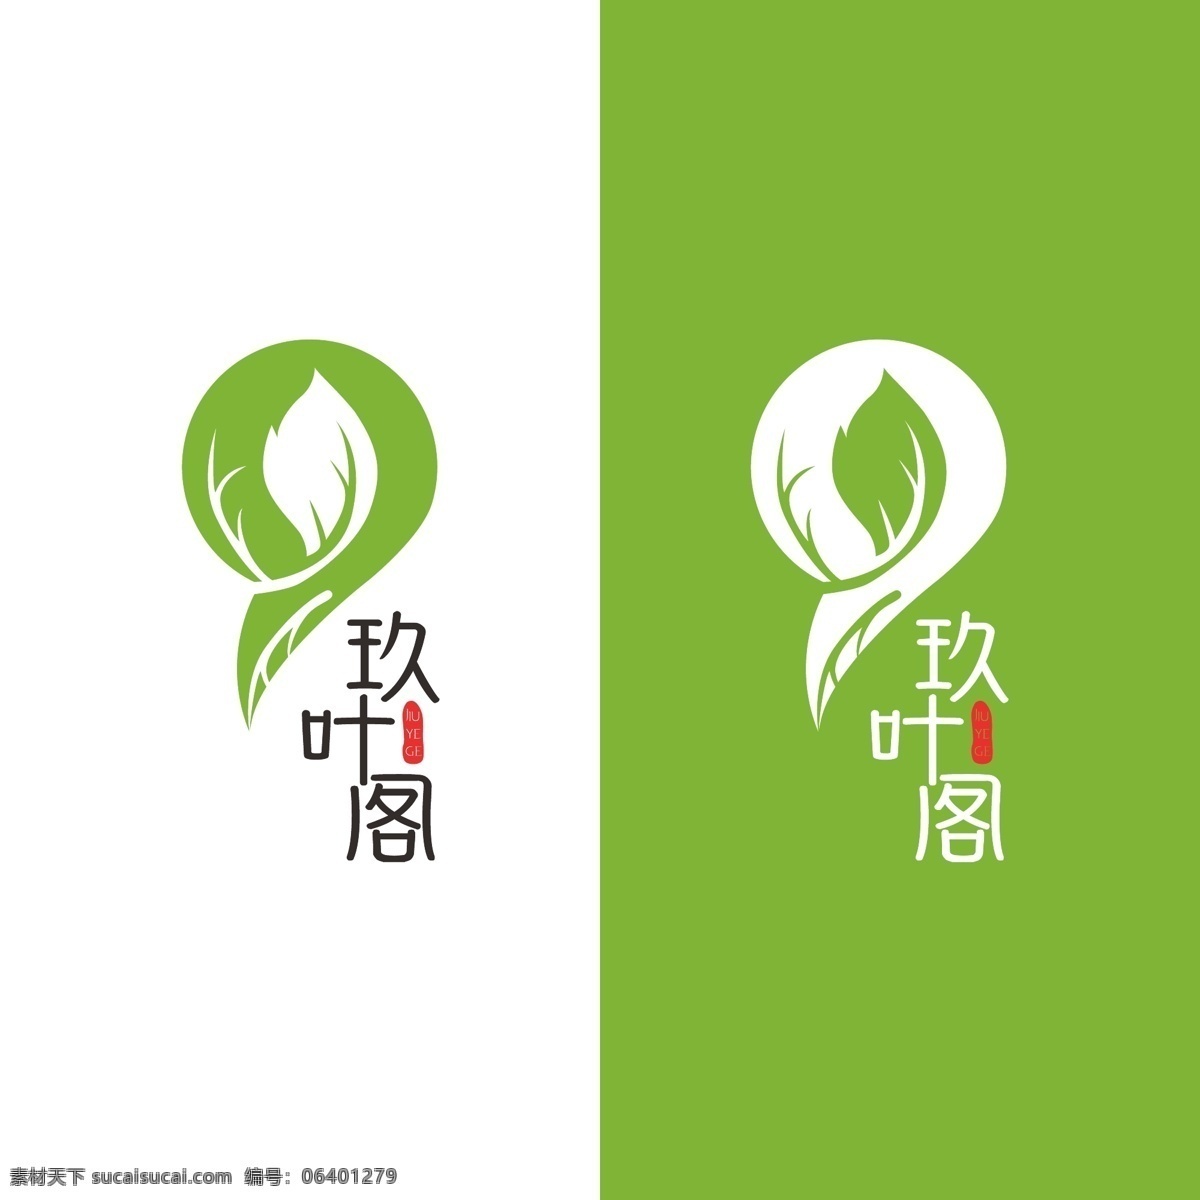 绿色 叶子 植物 logo 茶叶 树叶 简约 商标 标志 文艺